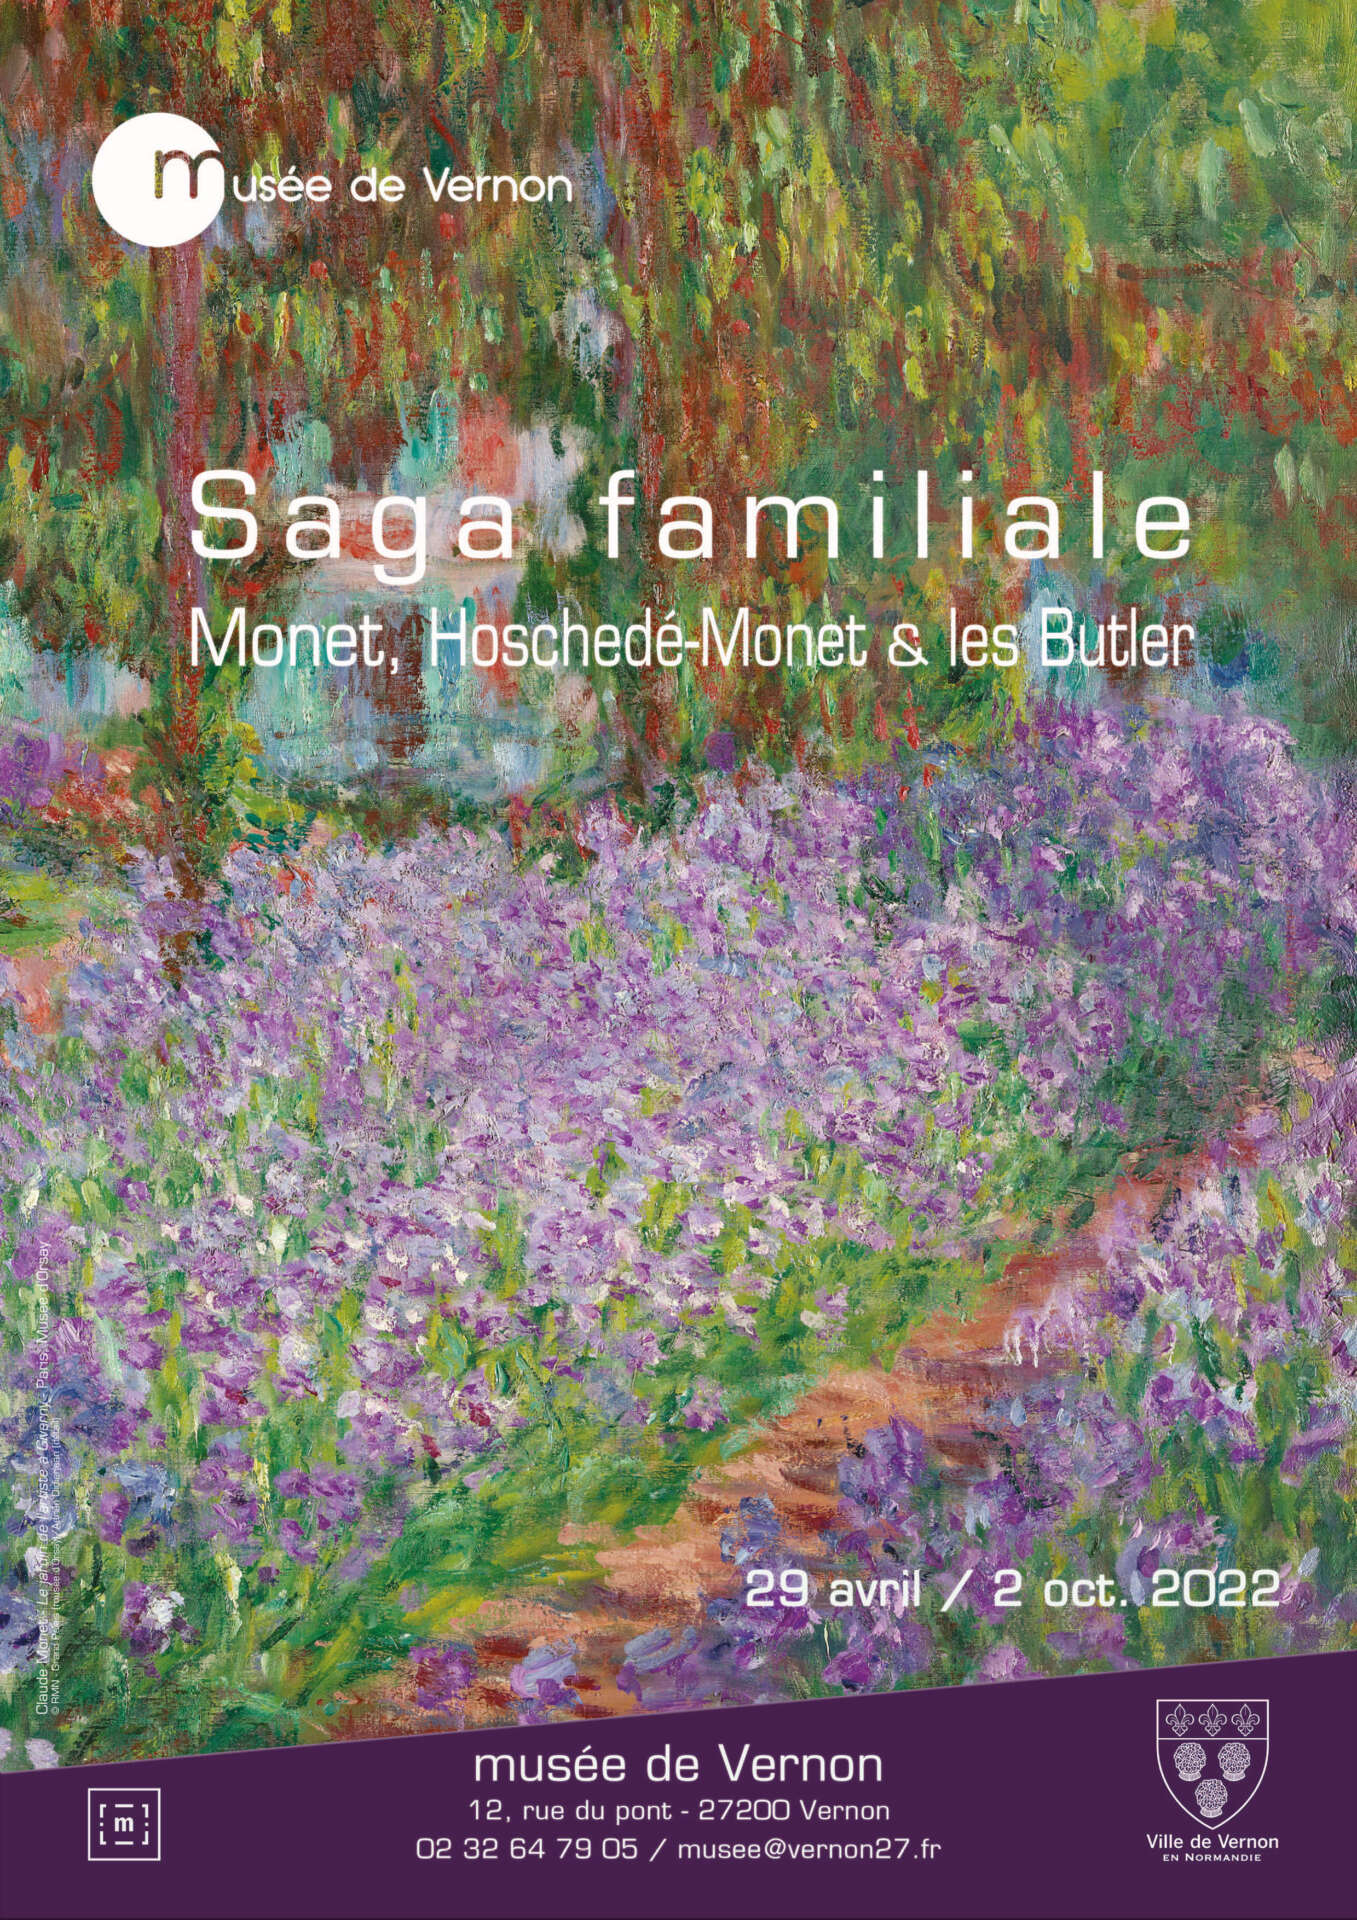 Saga familiale: Monet, Hoschedé-Monet et les Butler, poster of the exhibition